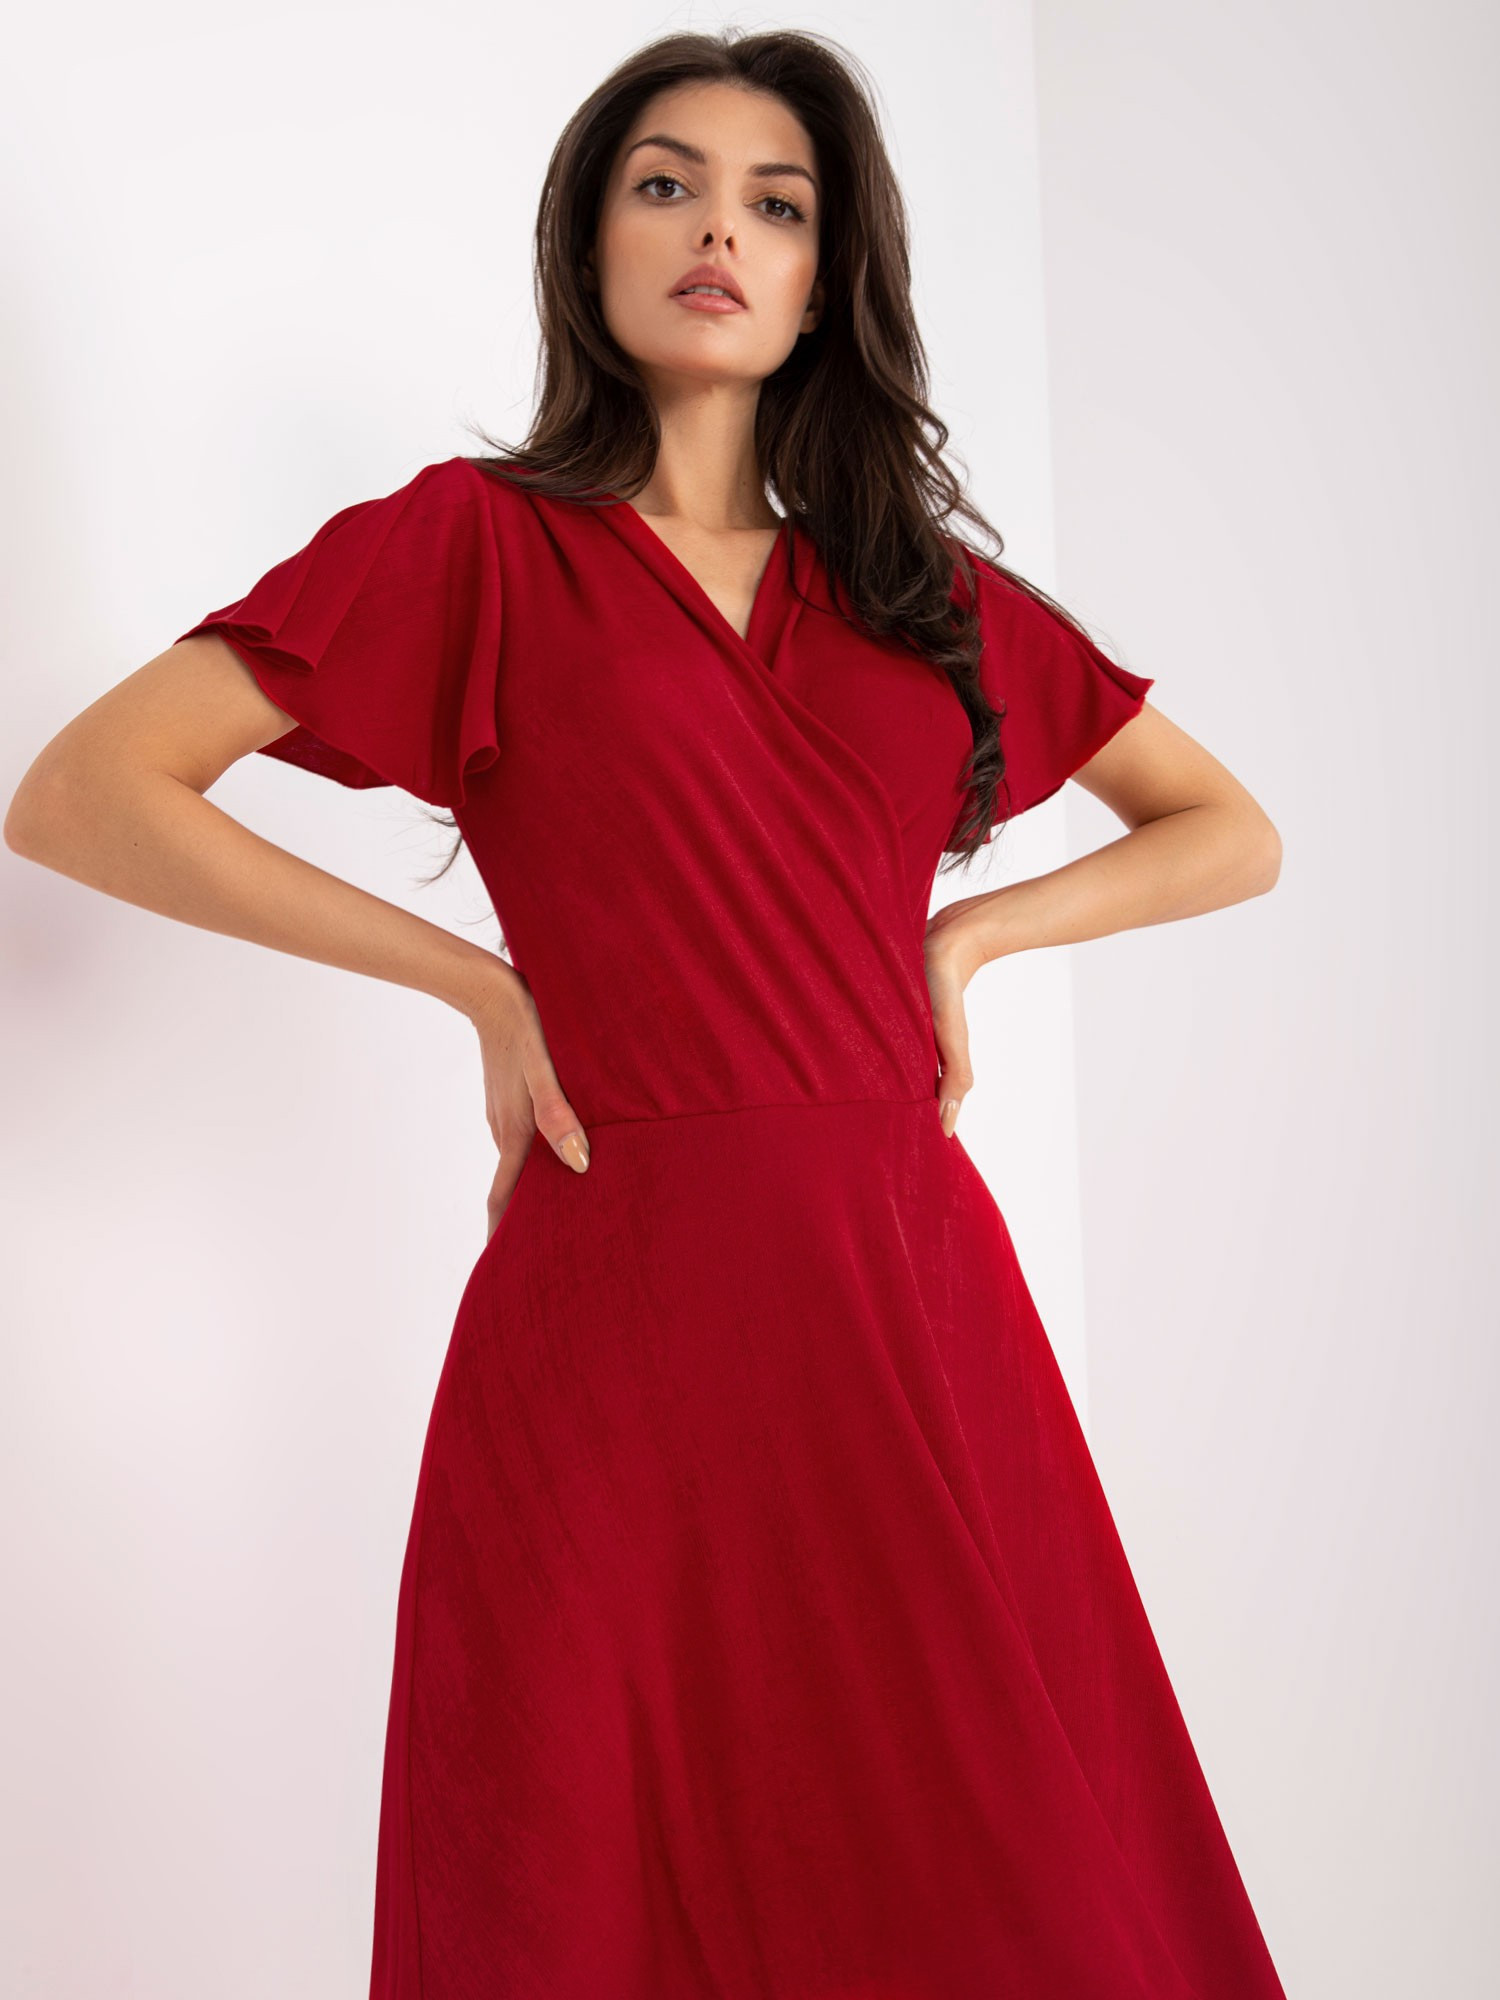 Dámské šaty NU SK červená 44 model 17965090 - FPrice